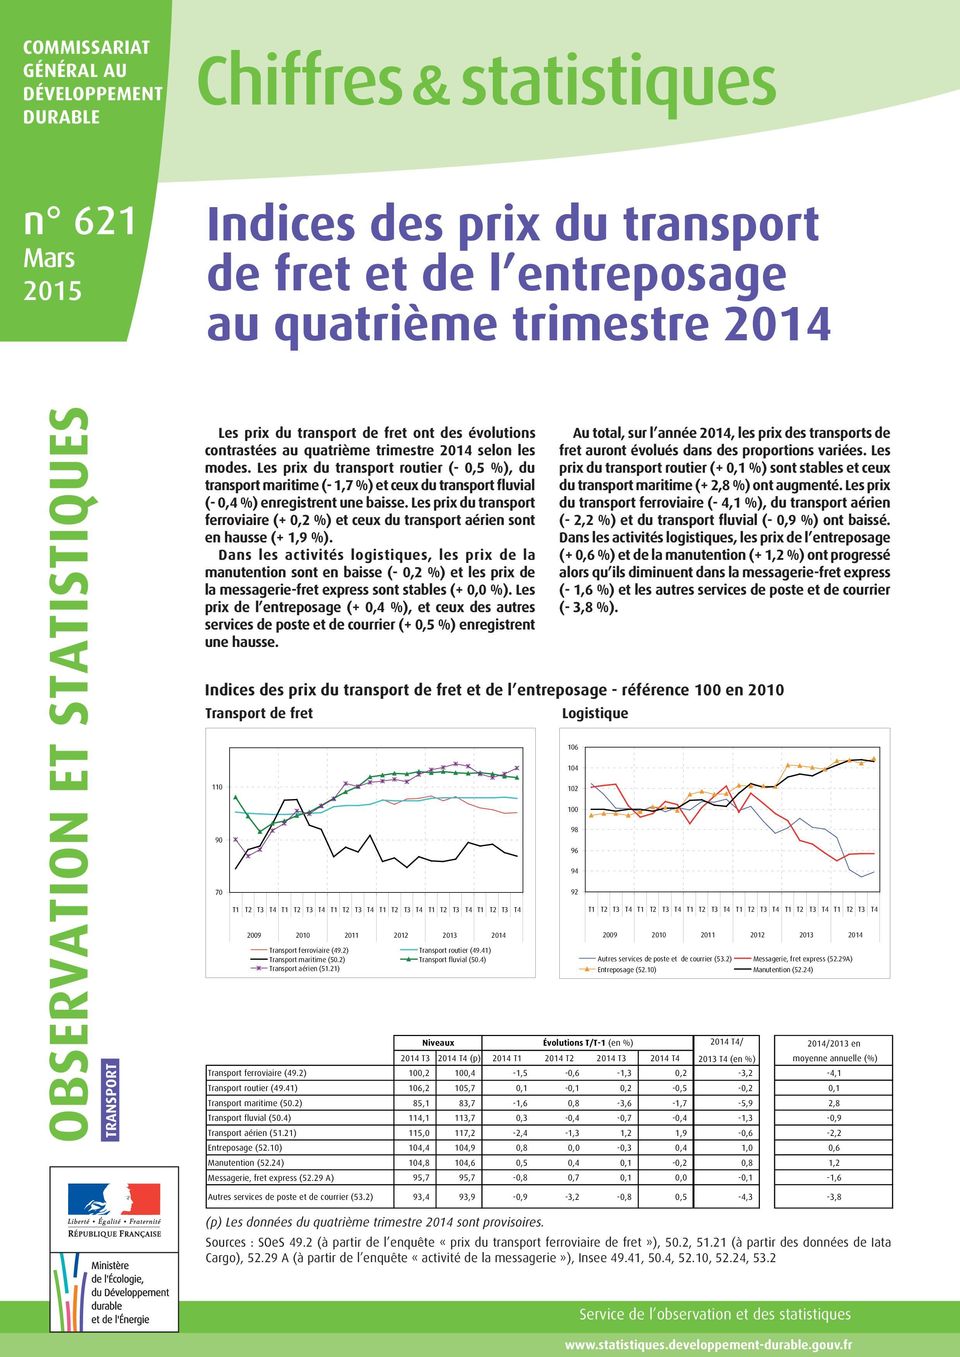 Les prix du transport routier (- 0,5 %), du transport maritime (- 1,7 %) et ceux du transport fluvial (- 0,4 %) enregistrent une baisse.